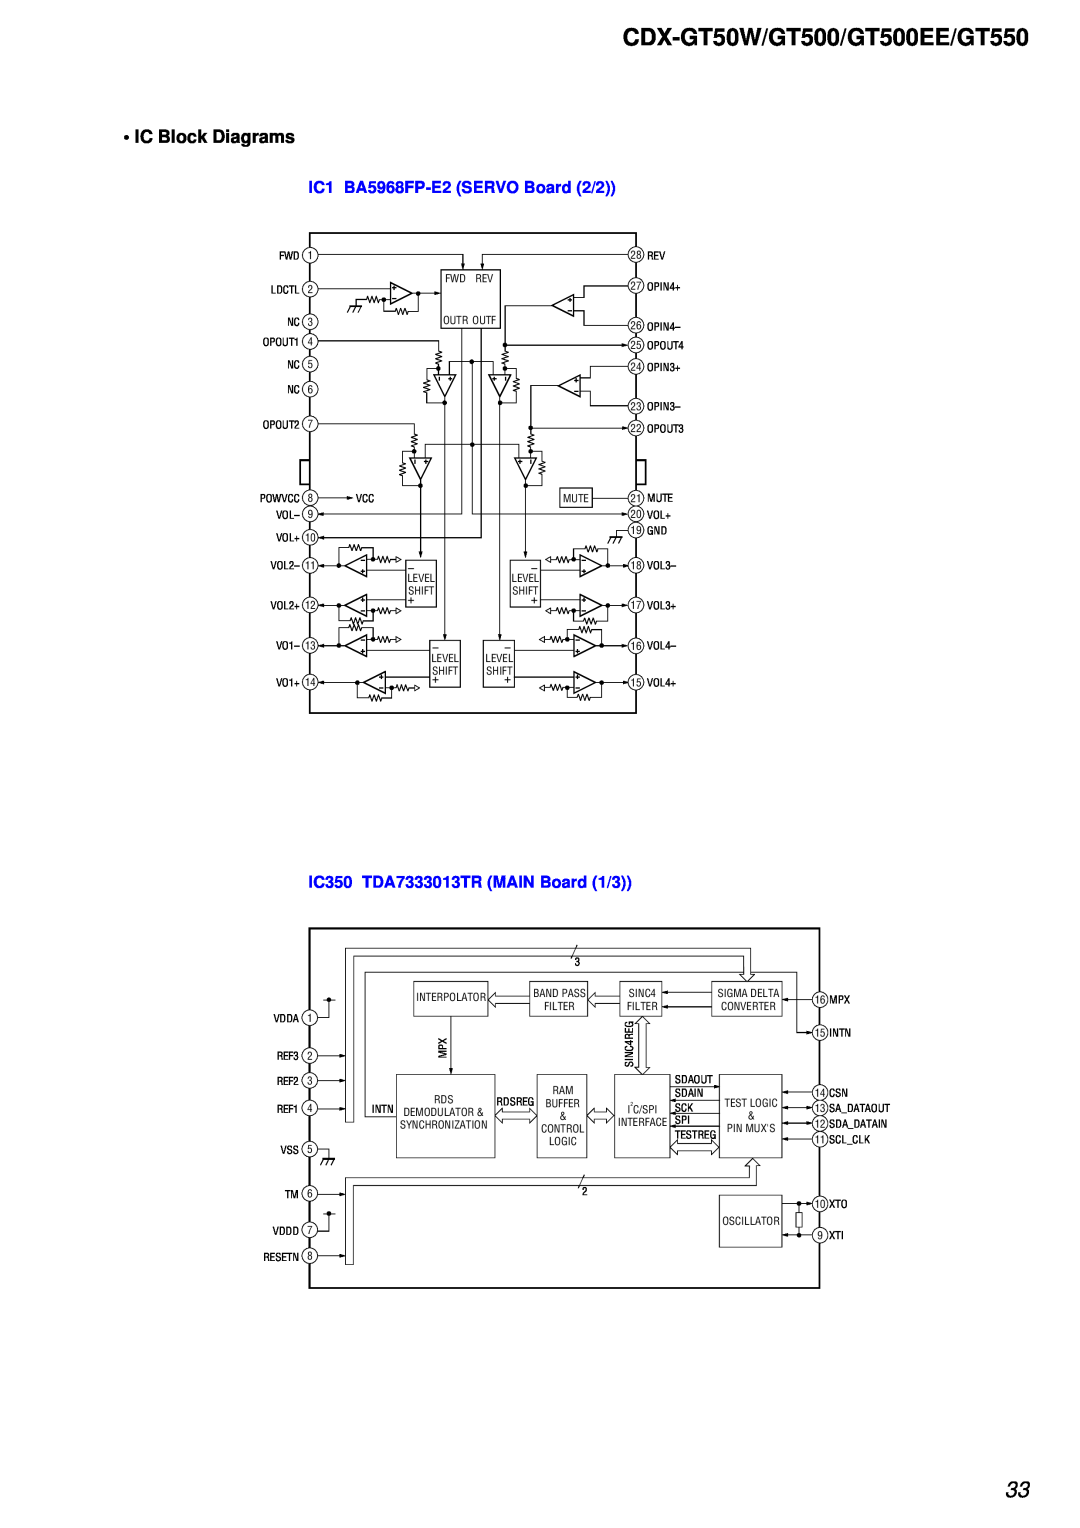 Sony CDX-GT500EE, CDX-GT550 IC Block Diagrams, CDX-GT50W/GT500/GT500EE/GT550, IC1 BA5968FP-E2SERVO Board 2/2 